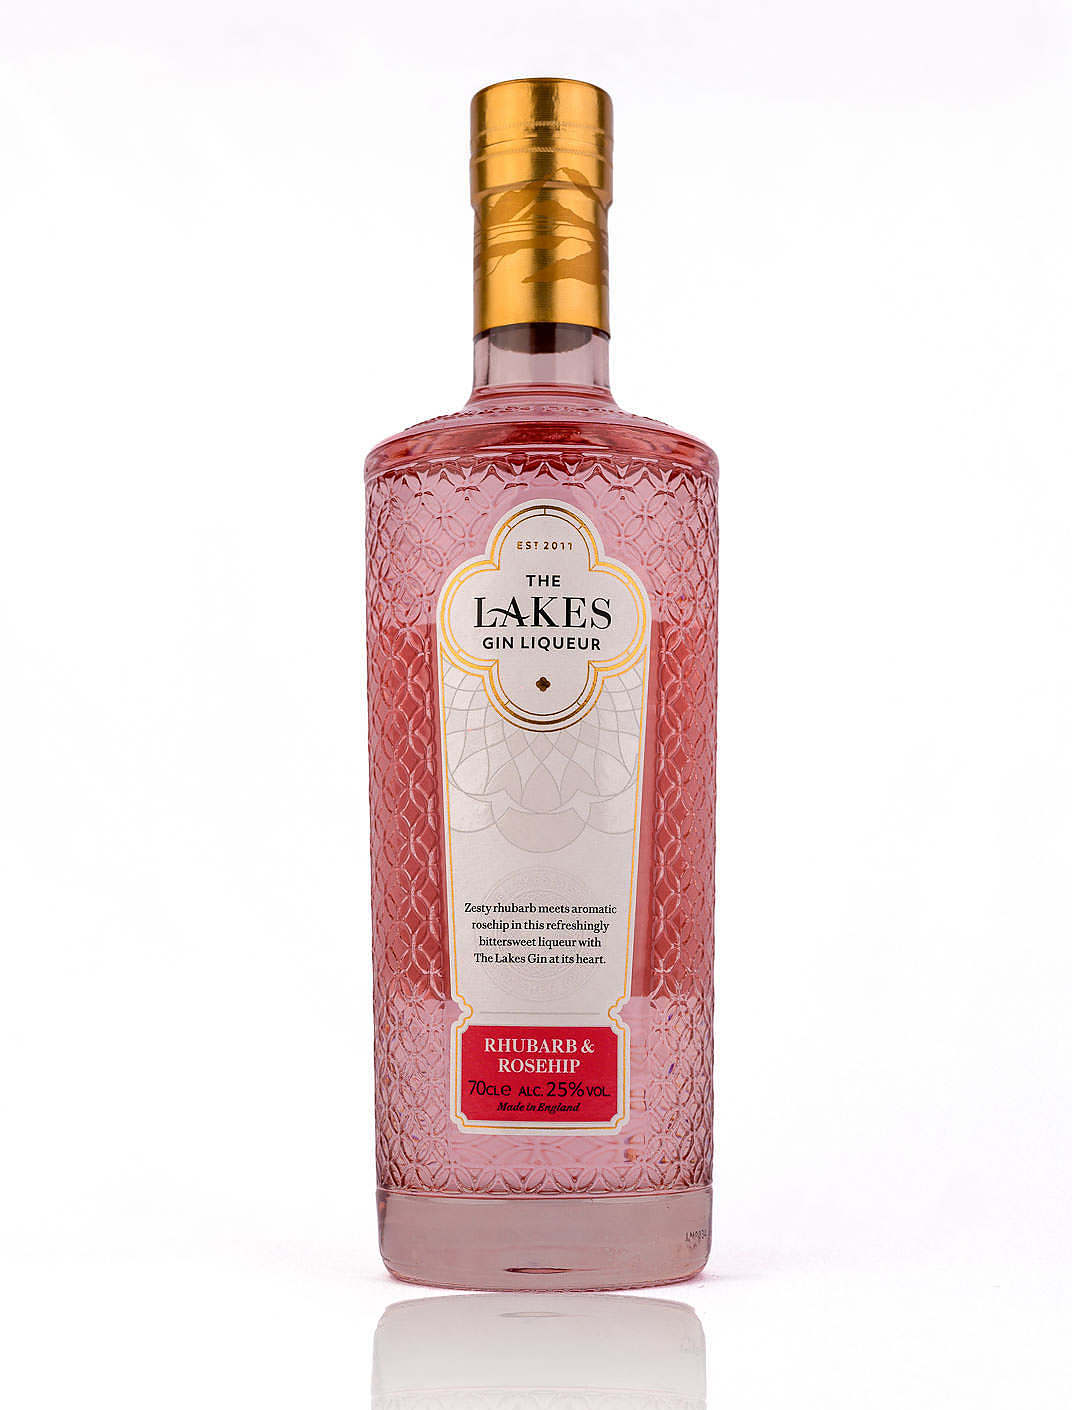 The Lakes - Rhubarb & Ginstitute Gin - Rosehip Durham Liqueur